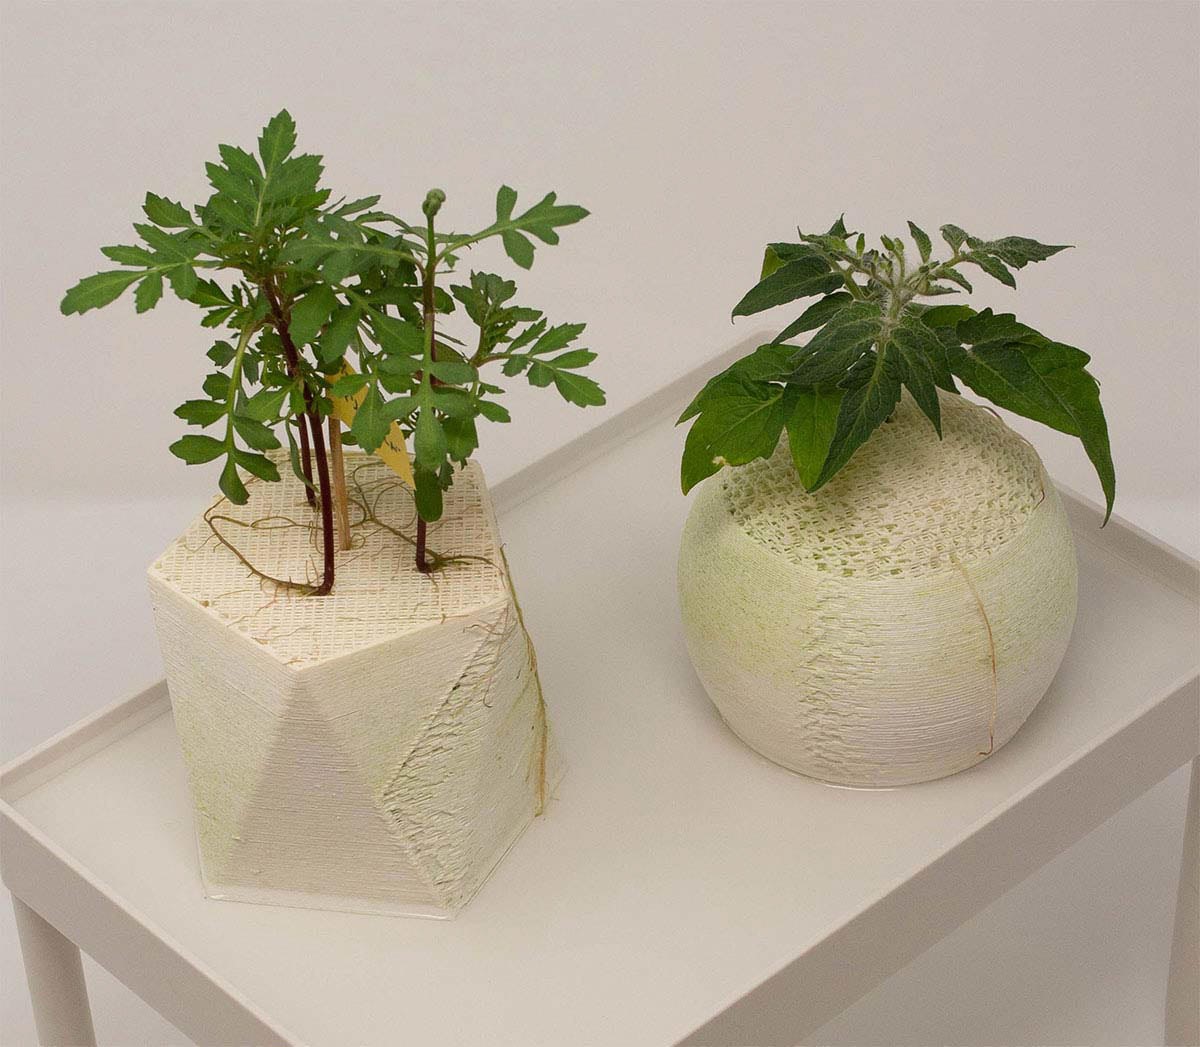 بستر های چاپ سه بعدی شده برای کشت گیاهان بدون خاک